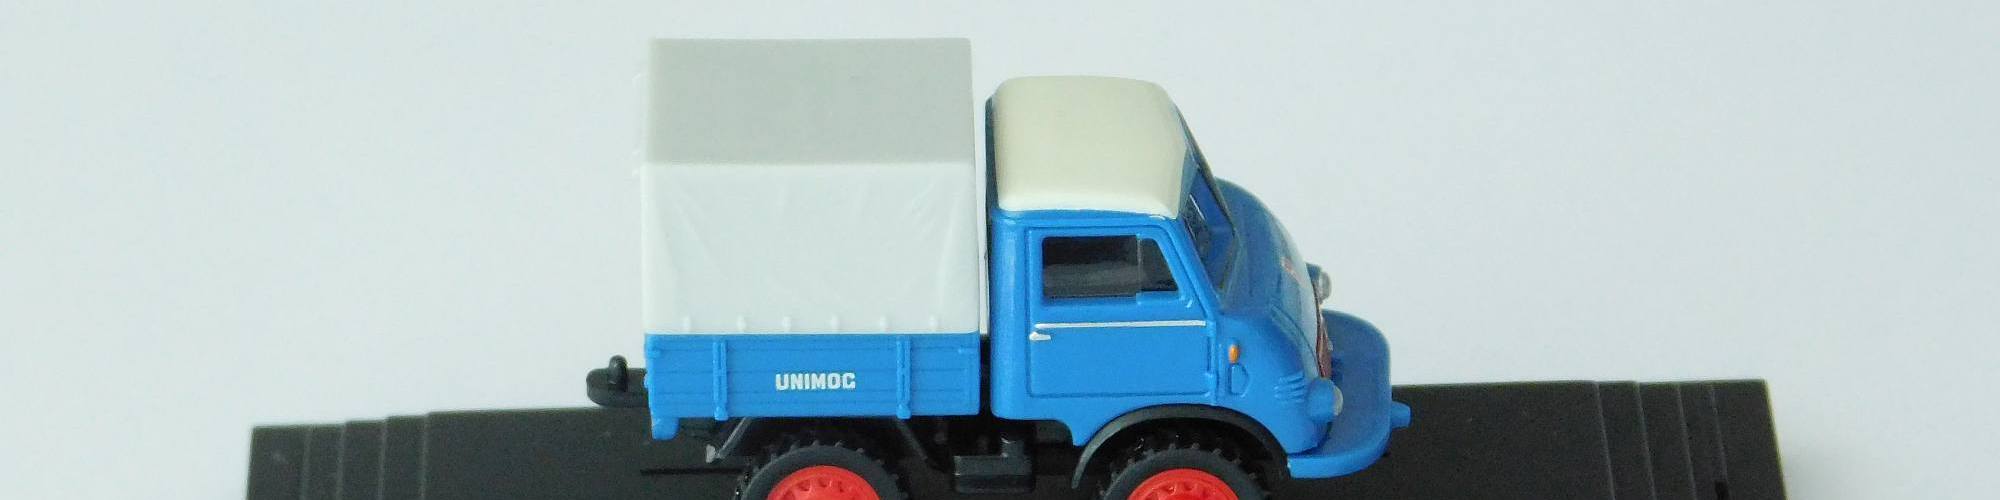 Neues Wiking Sondermodell des Unimog Museum